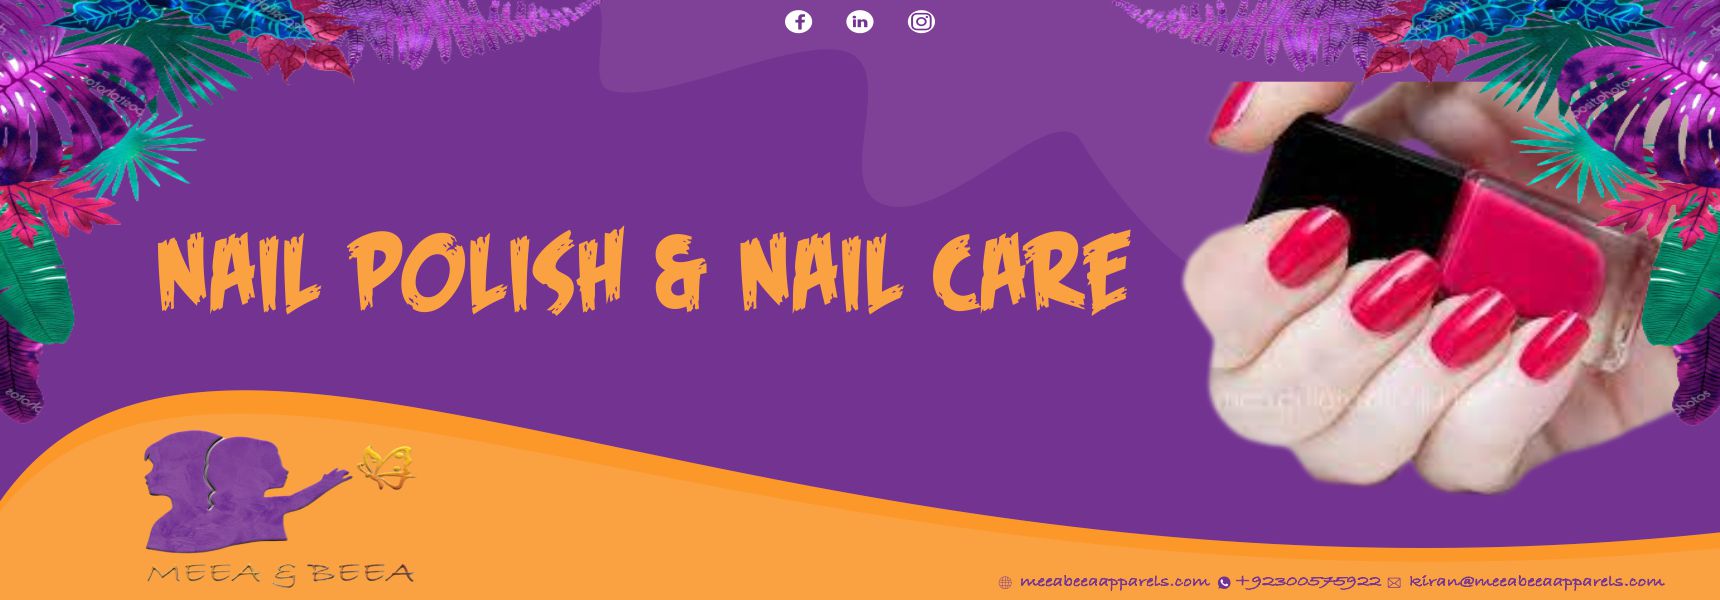  Nail Polish & Care